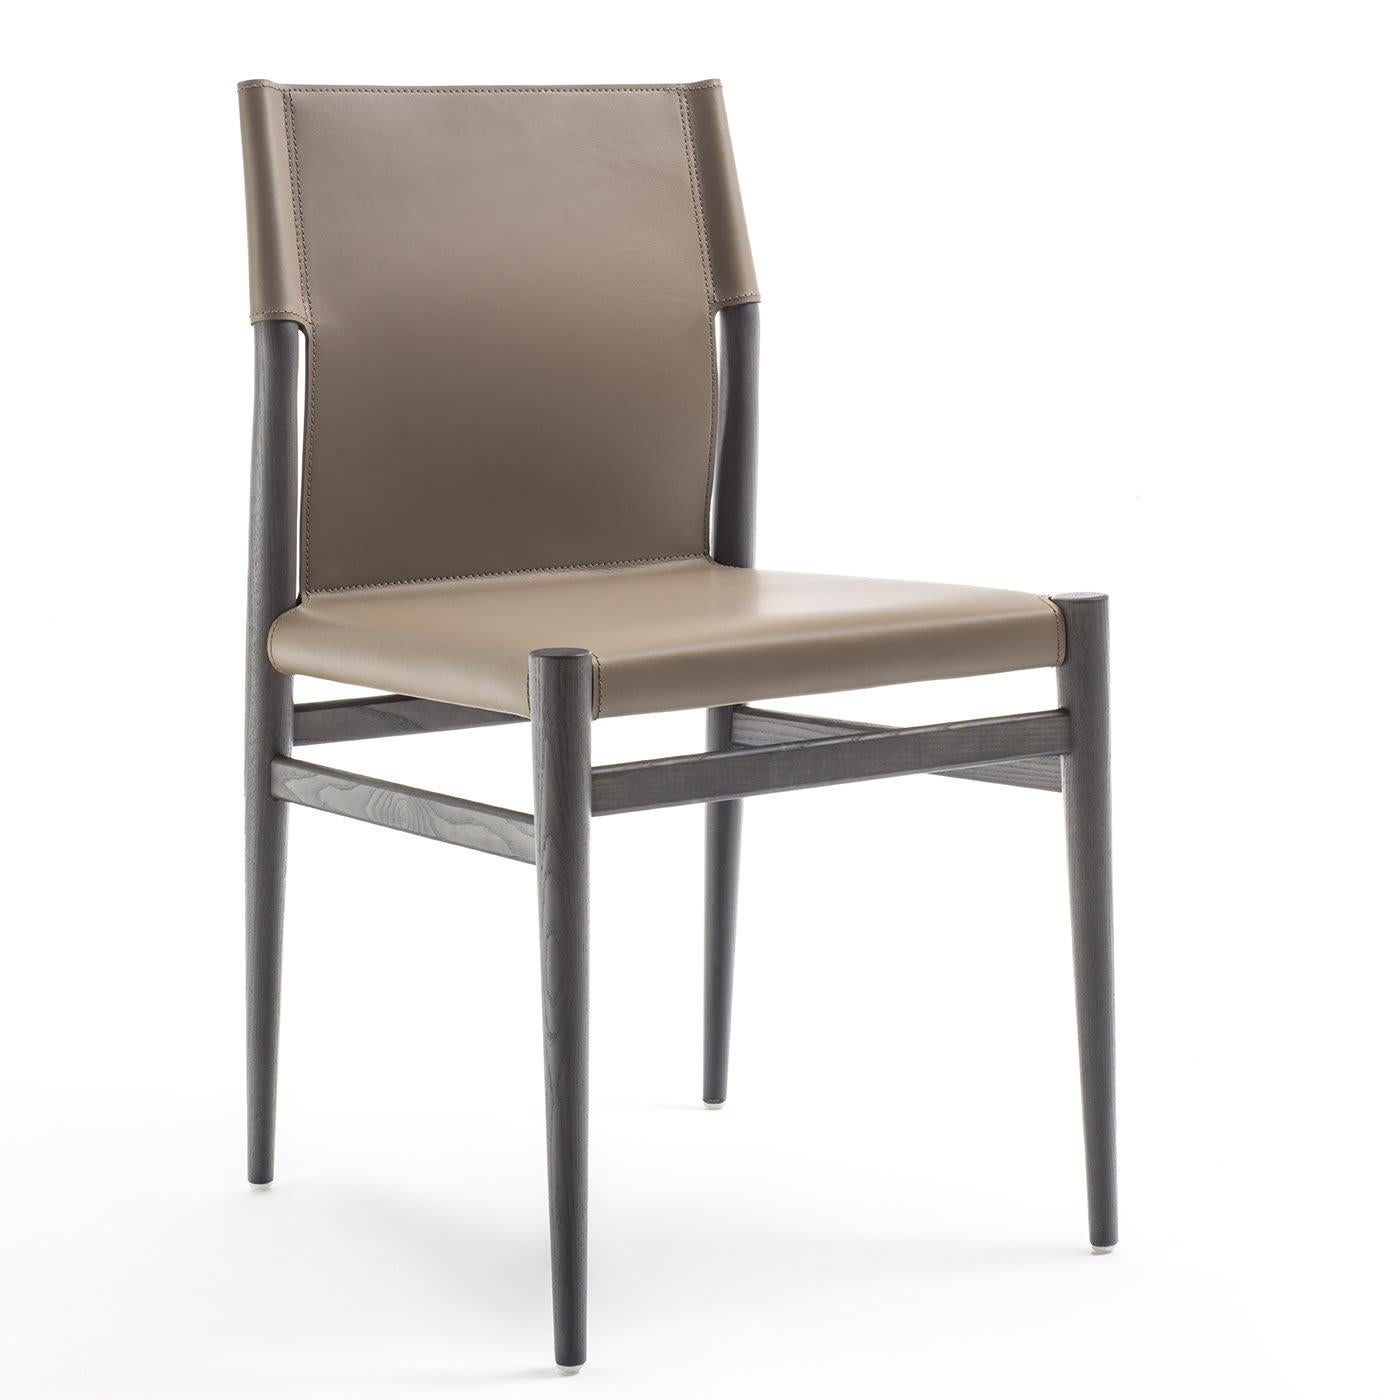 Sitz und Rückenlehne des Ledermann-Stuhls sind miteinander verbunden und mit taupefarbenem Leder überzogen. Der Rahmen und die vier konisch zulaufenden Beine sind aus grauem Eschenholz gefertigt. Sein robuster, scharfkornierter Minimalismus erinnert